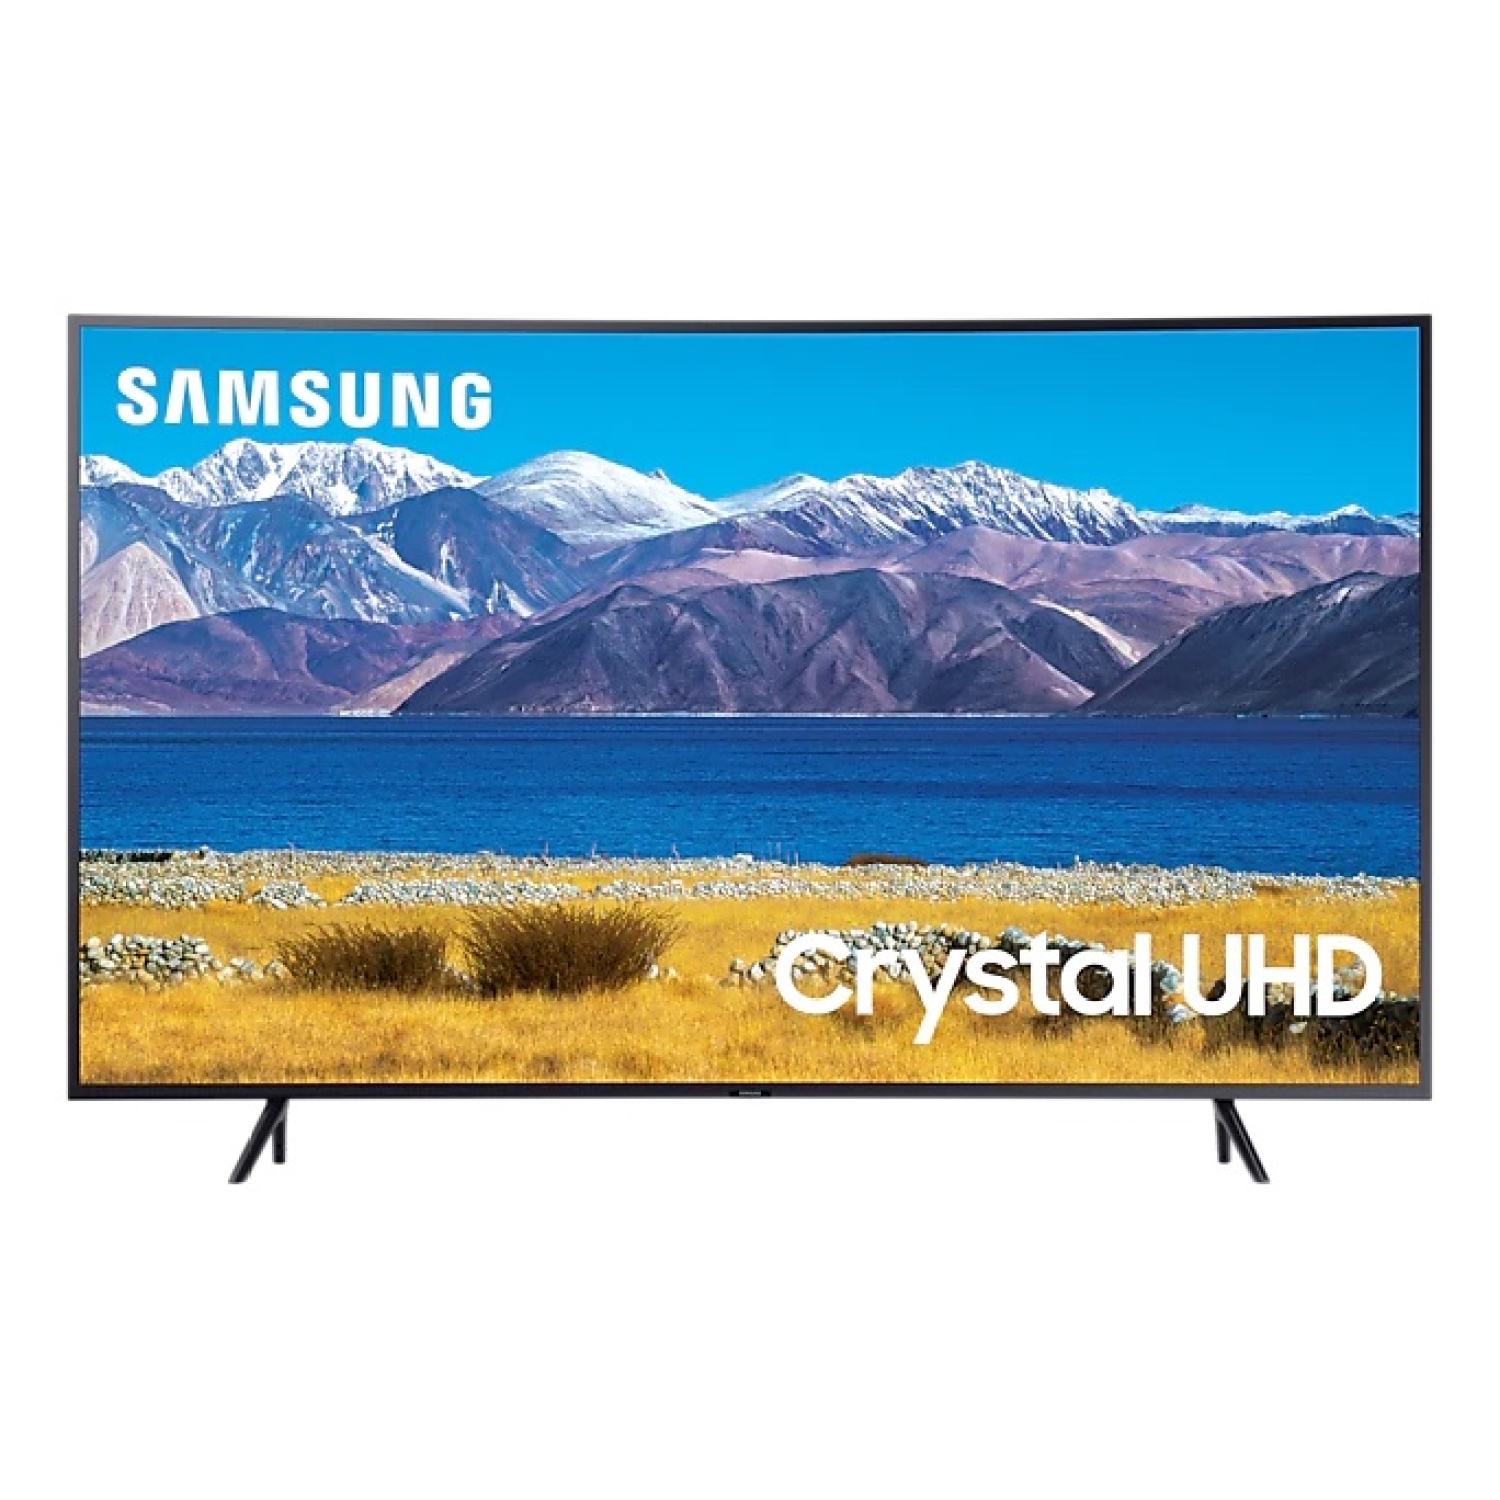 Smart Tivi Samsung Crystal 4K 65 inch UA65TU8300KXXV Chính hãng BH: 24 tháng trên toàn quốc chính hãng